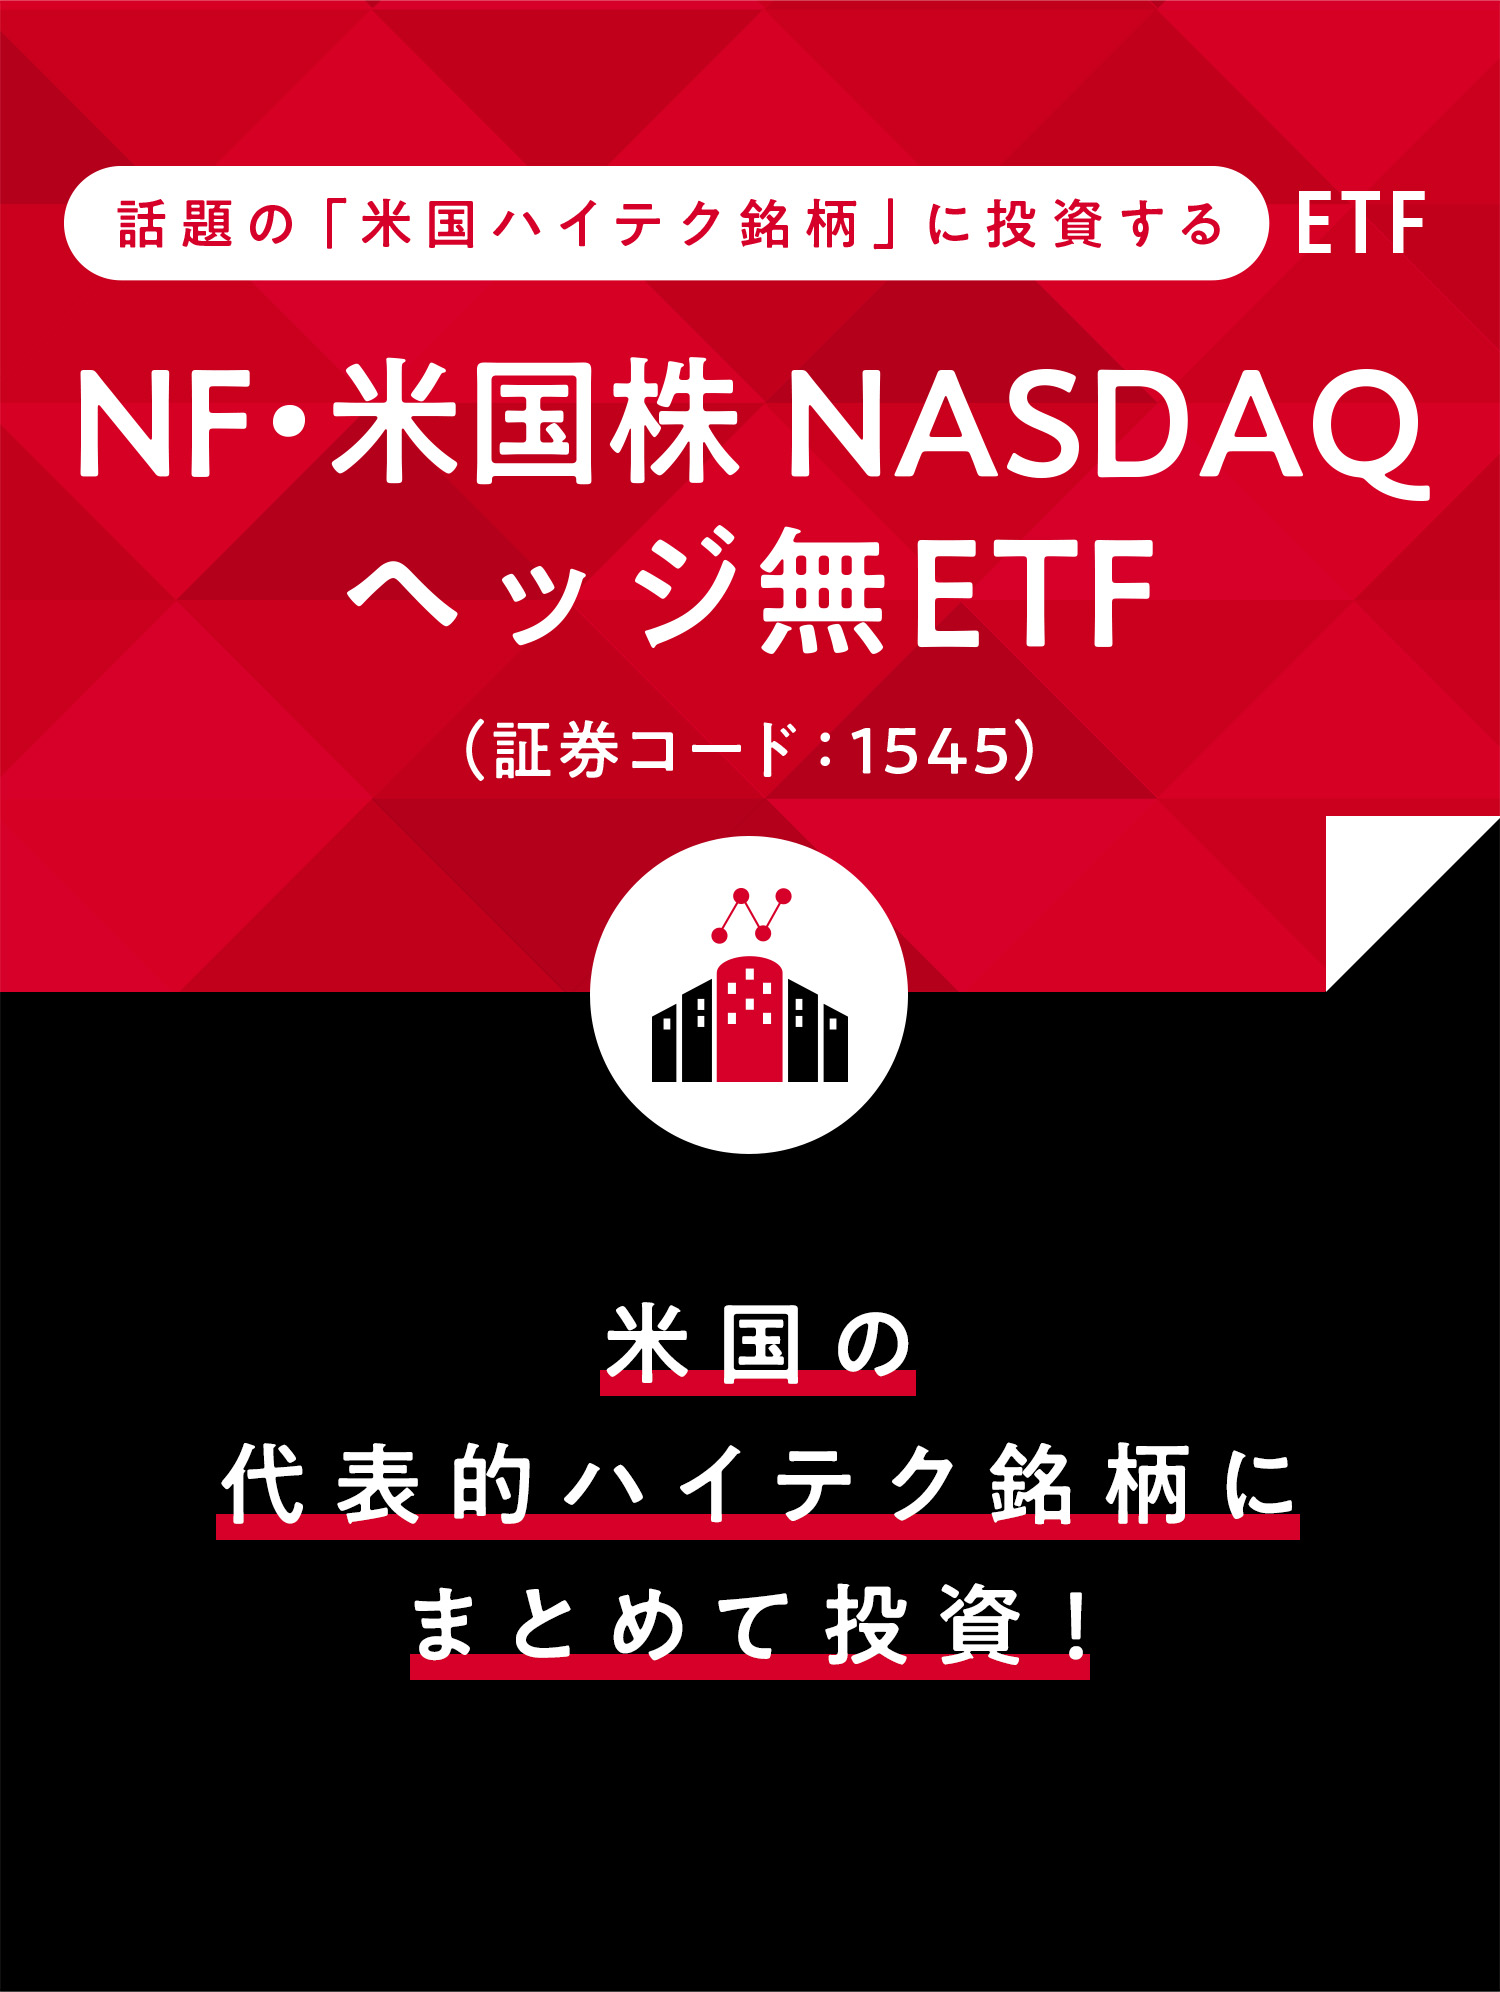 話題の「米国ハイテク銘柄」に投資するETF NF・米国株NASDAQヘッジ無ETF（証券コード：1545） 海外投資を考えるなら、まずは米国から。代表的な米国企業にまとめて投資！